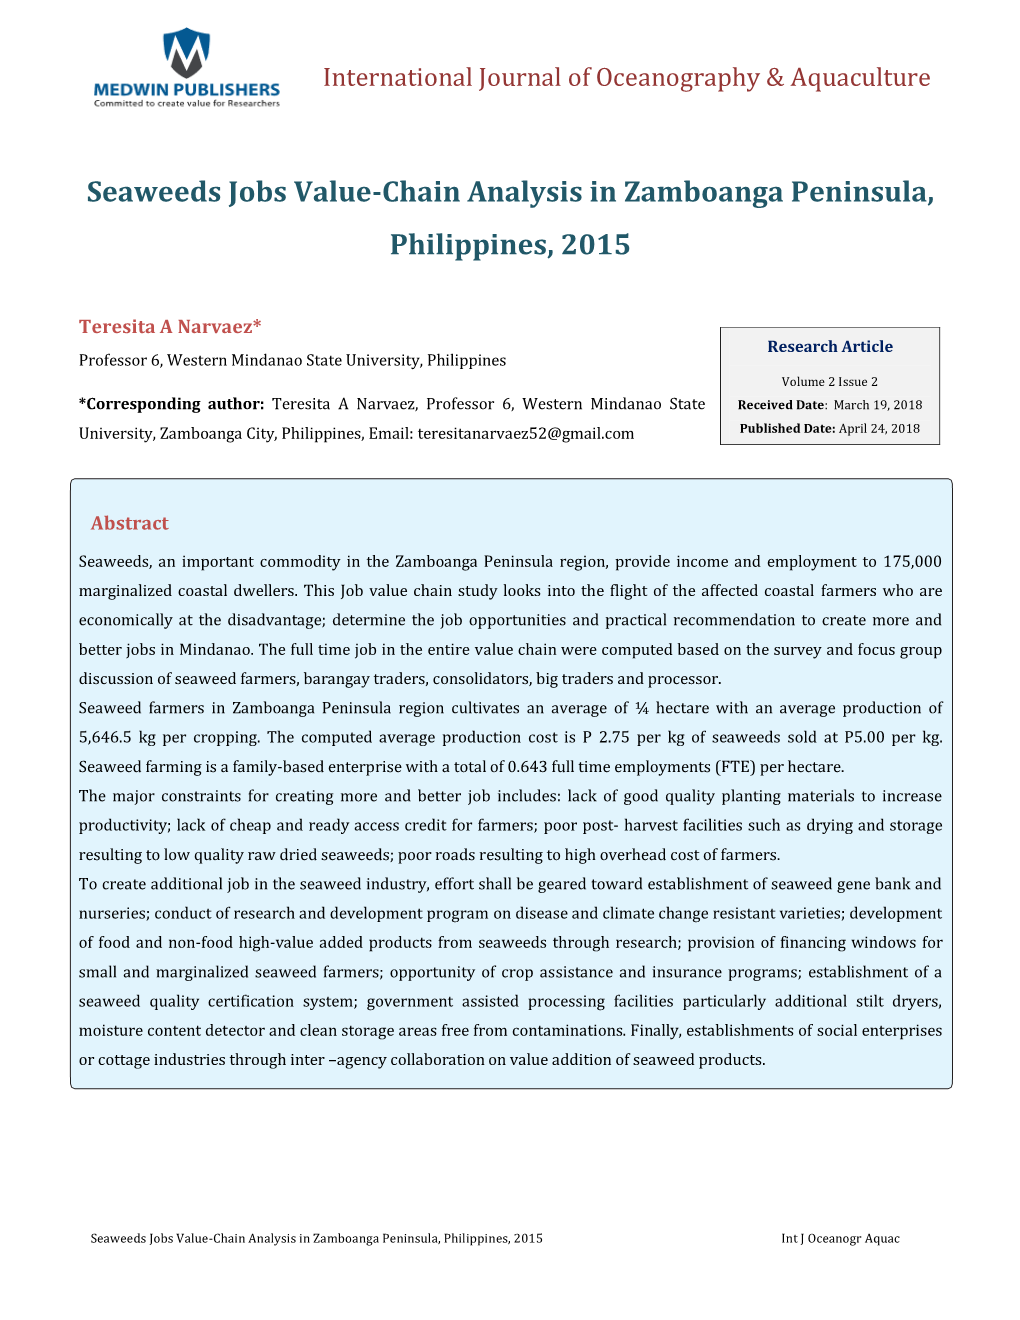 Seaweeds Jobs Value-Chain Analysis in Zamboanga Peninsula, Philippines, 2015